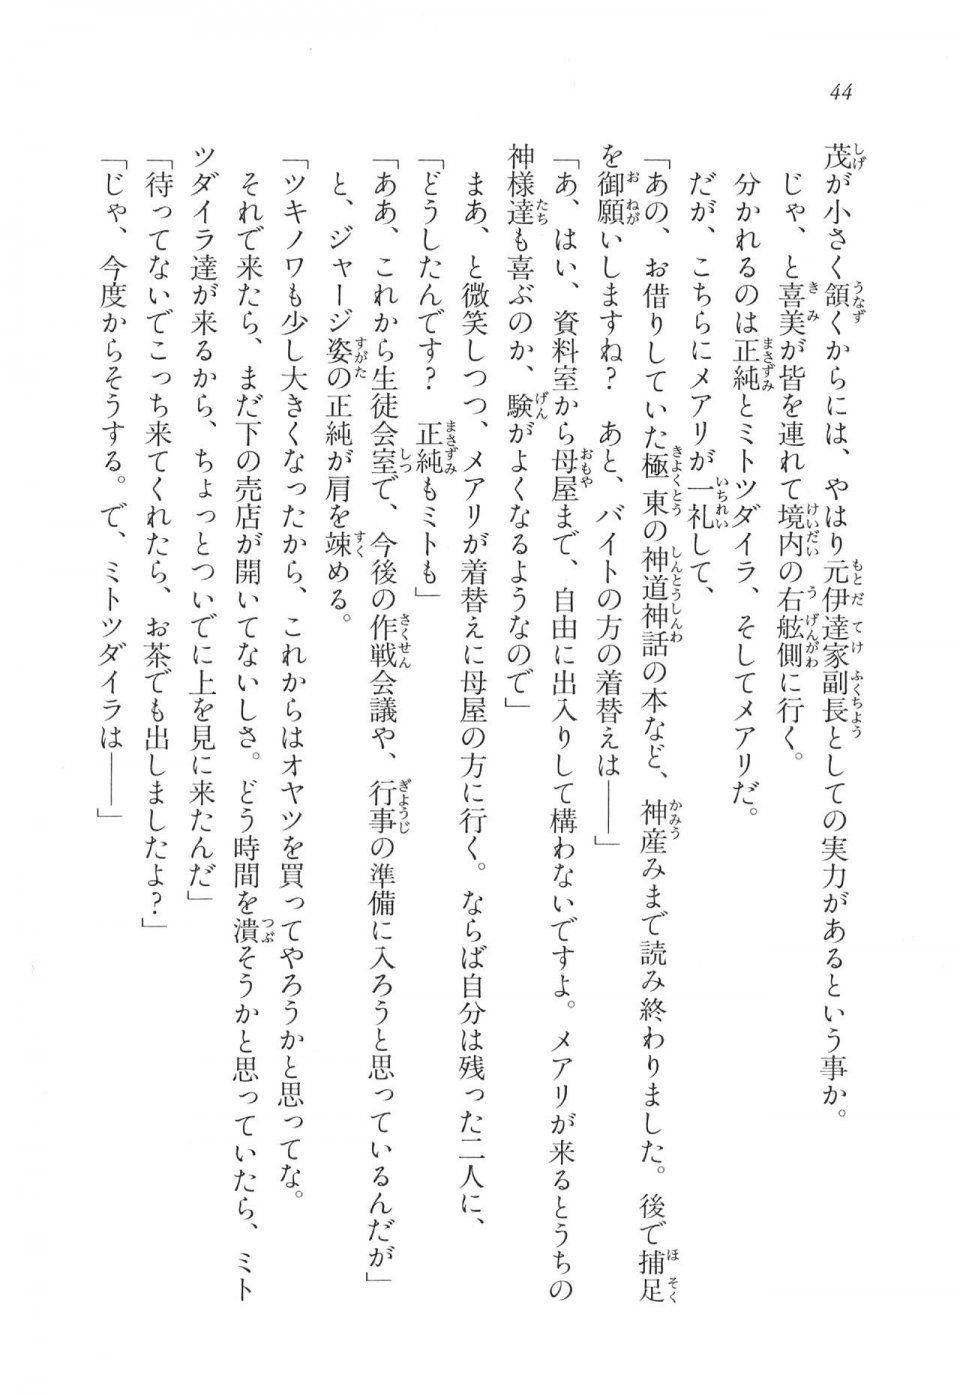 Kyoukai Senjou no Horizon LN Vol 11(5A) - Photo #45